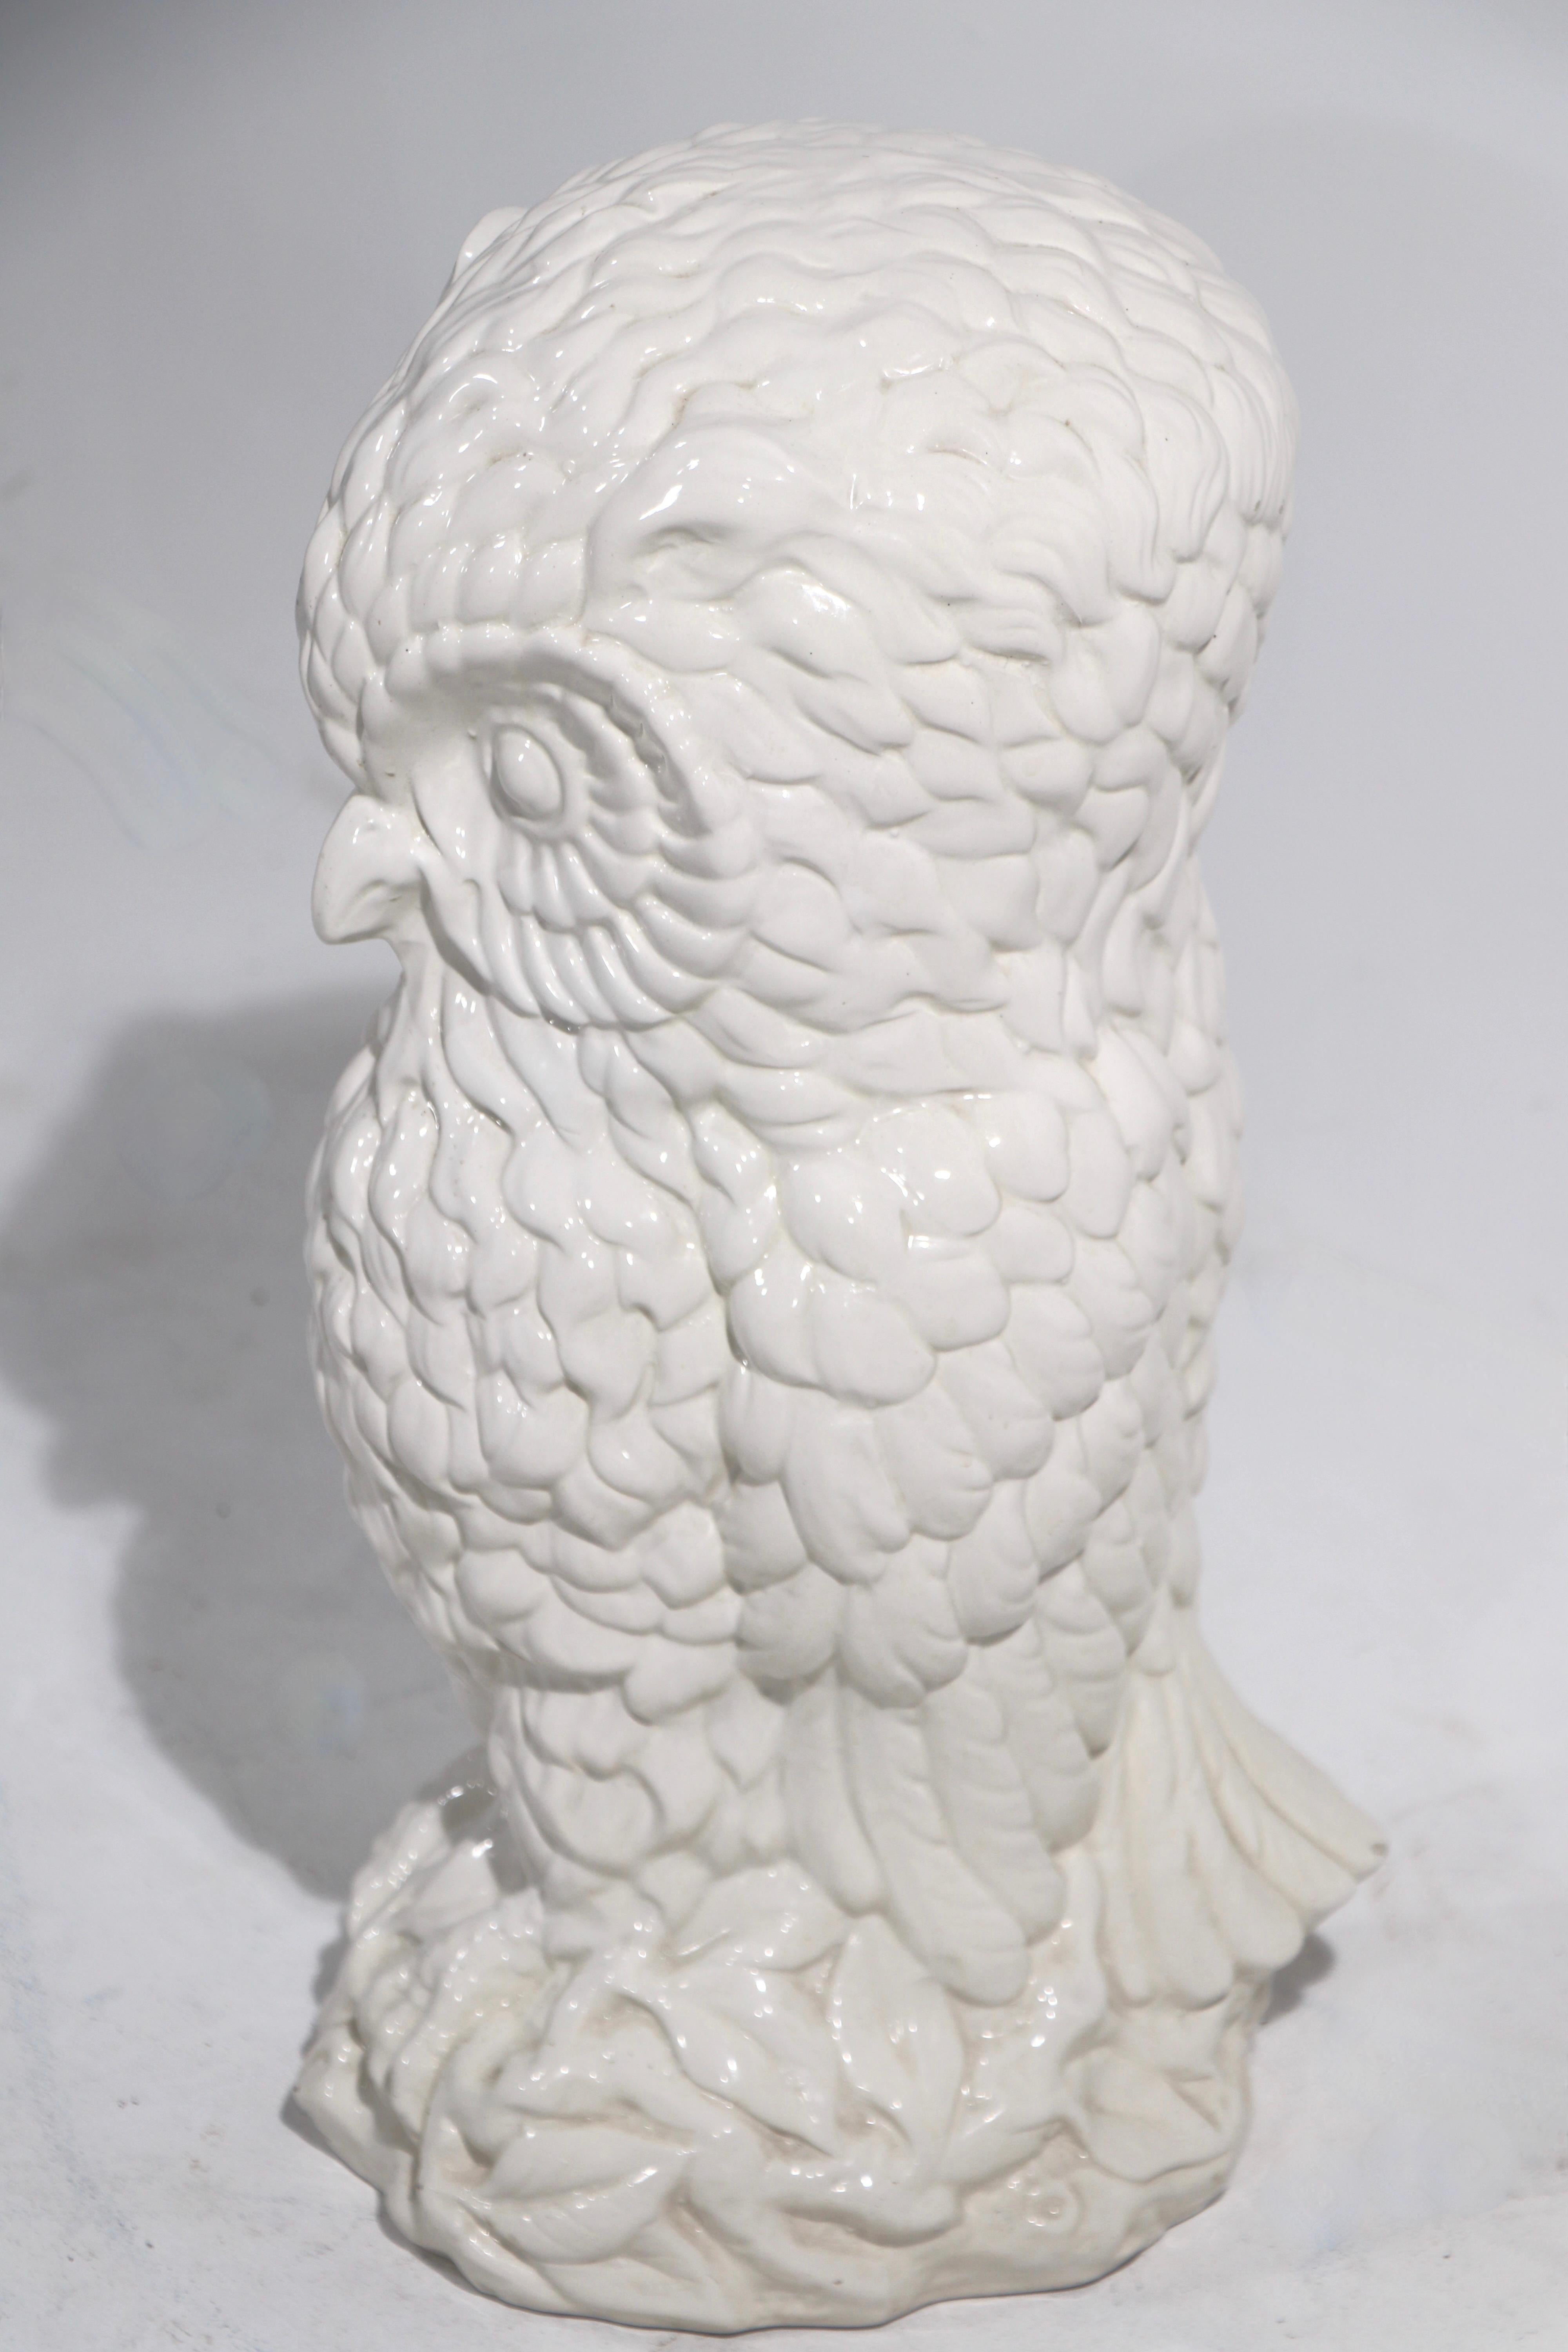 Attraktive Eule aus Keramik, weiß auf weiß, mit der Aufschrift Made in Italy A 66. Dieses Exemplar befindet sich in einem sehr guten Originalzustand und weist nur leichte Altersspuren auf, die normal und altersentsprechend sind.